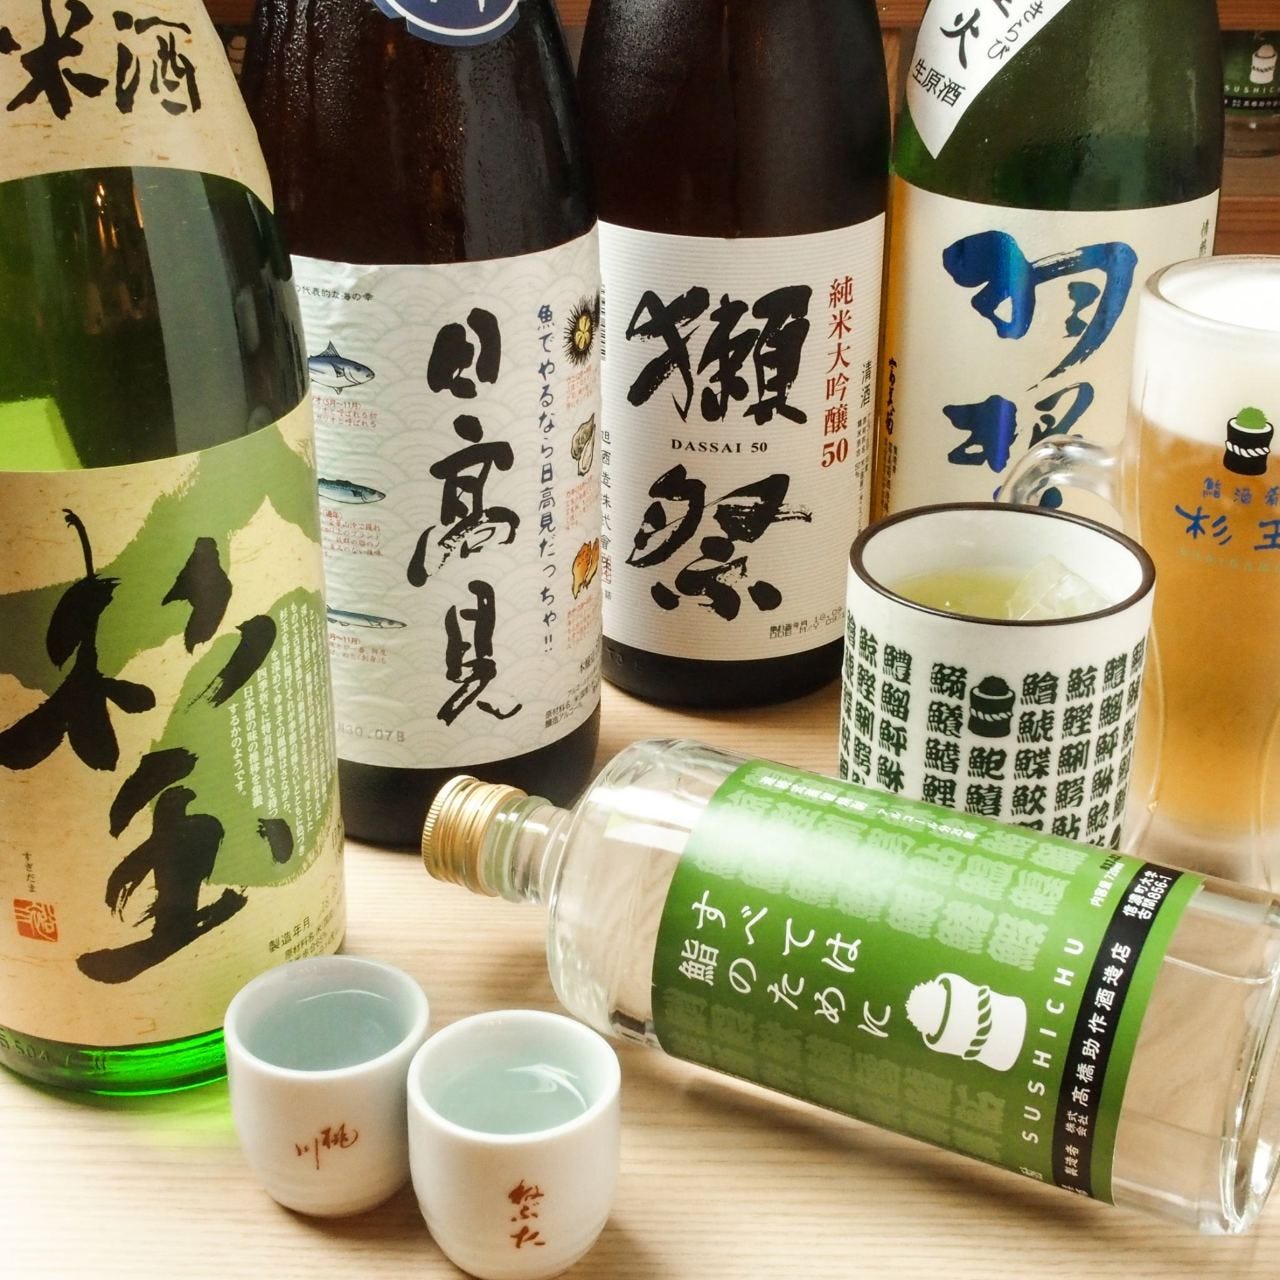 鮨・酒・肴 杉玉 千歳烏山